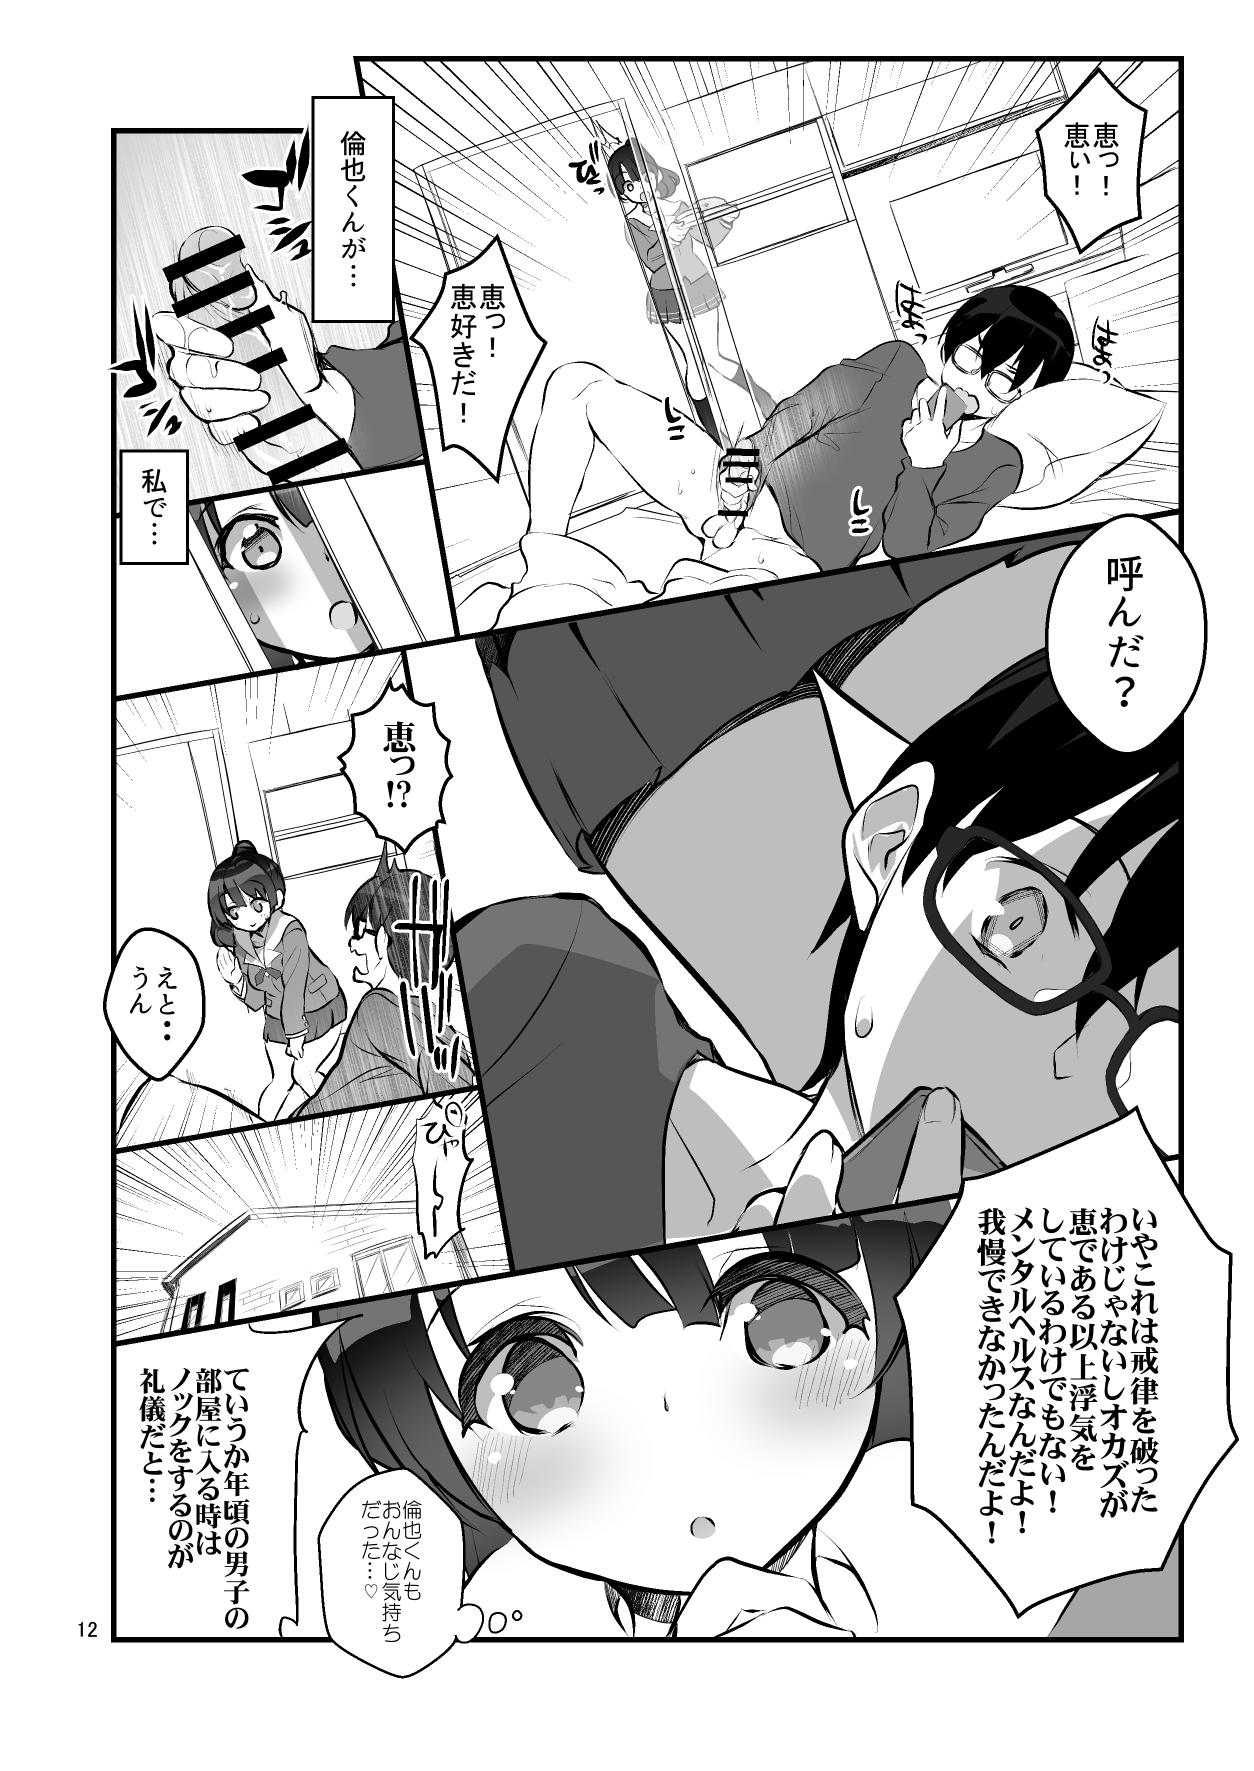 Marido Futsukano wa Wotakare no Megane o Toru. 2 - Saenai heroine no sodatekata Stockings - Page 12